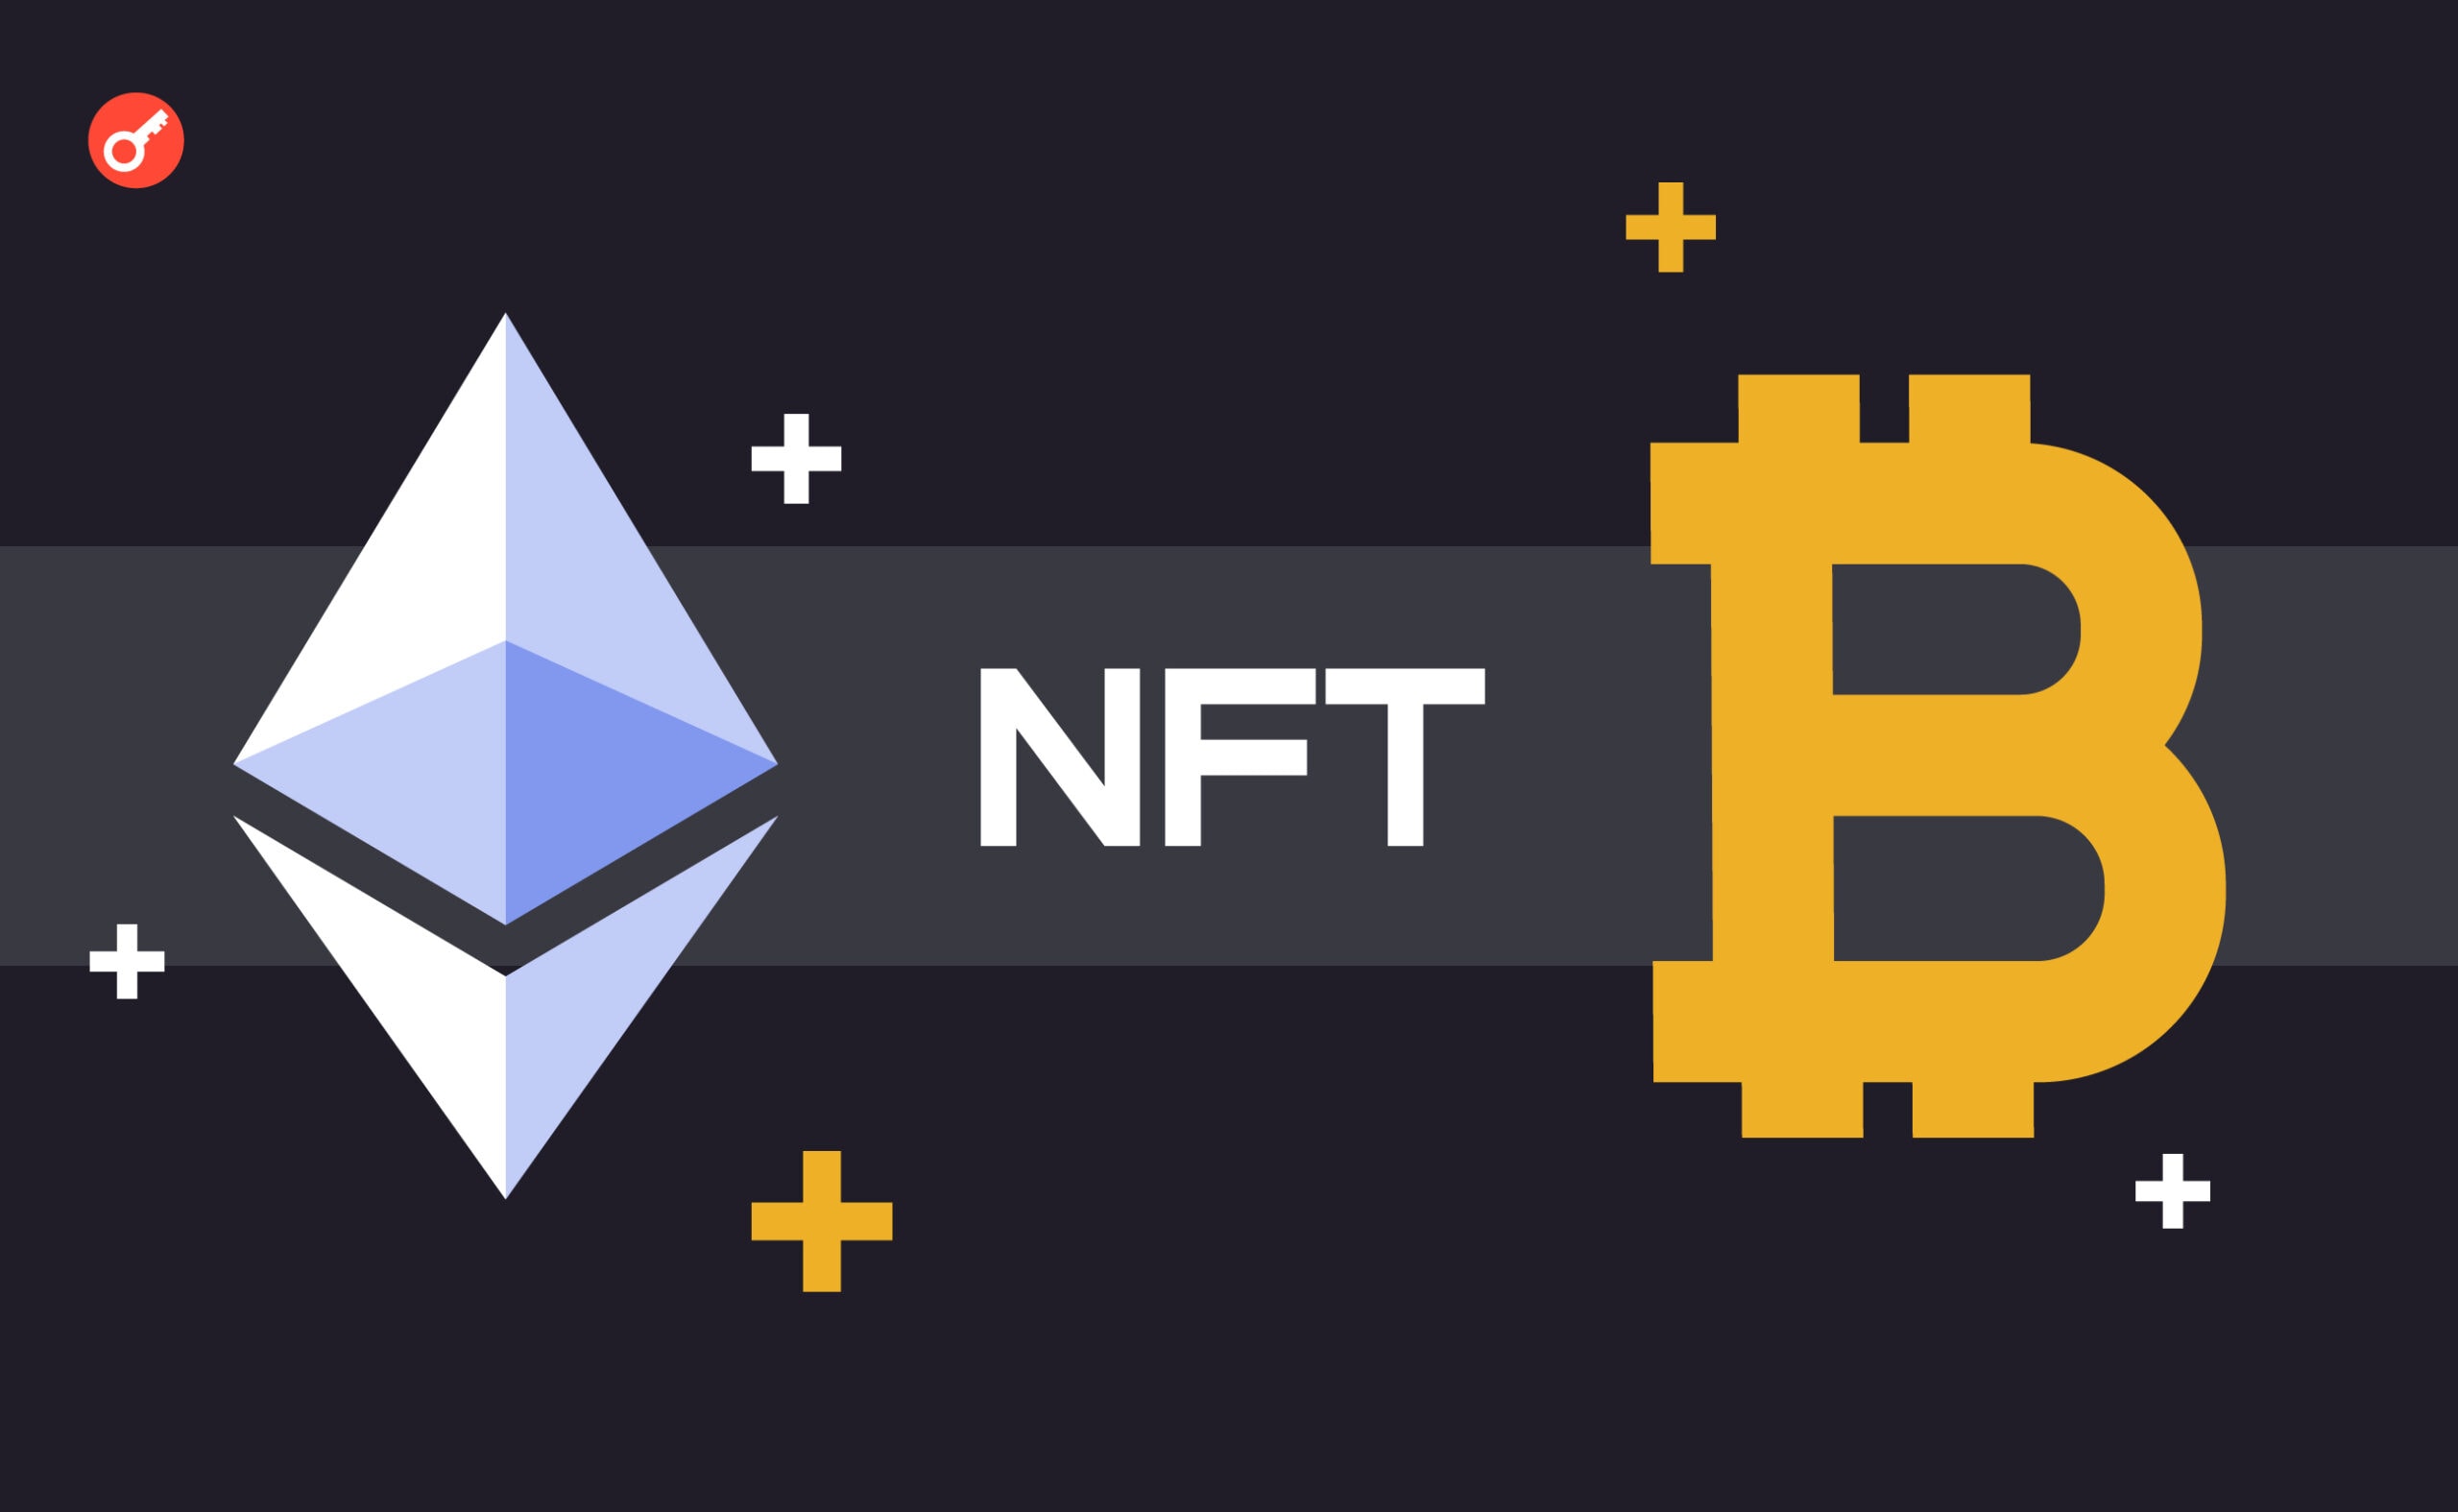 Bitcoin Miladys випустив міст для переведення Ethereum NFT на блокчейн Bitcoin. Головний колаж новини.